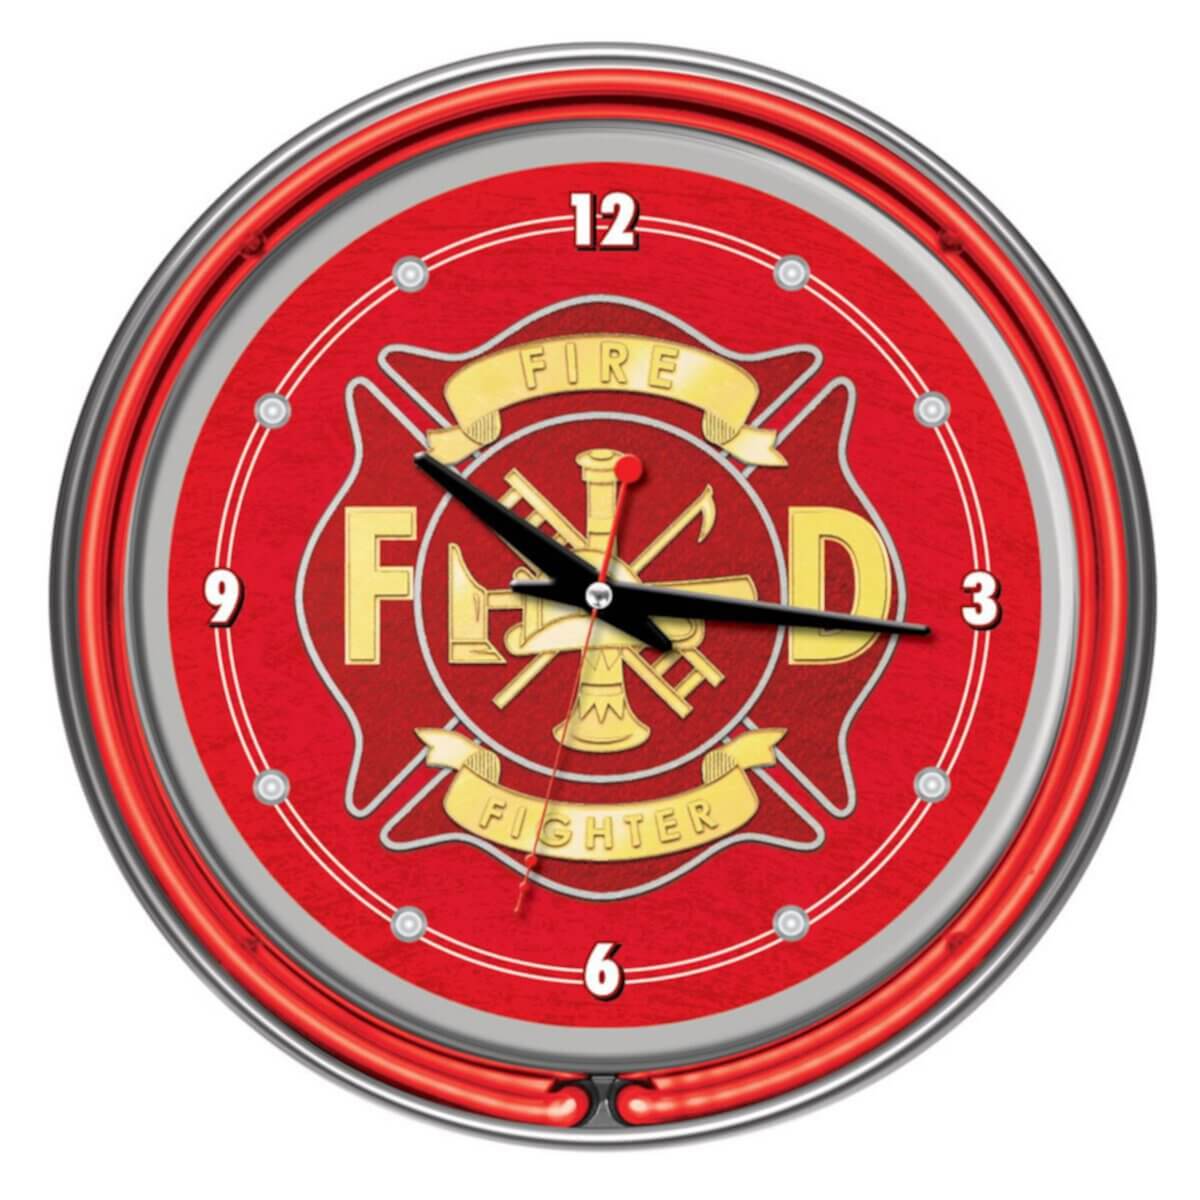 Firefighter Wall Clock